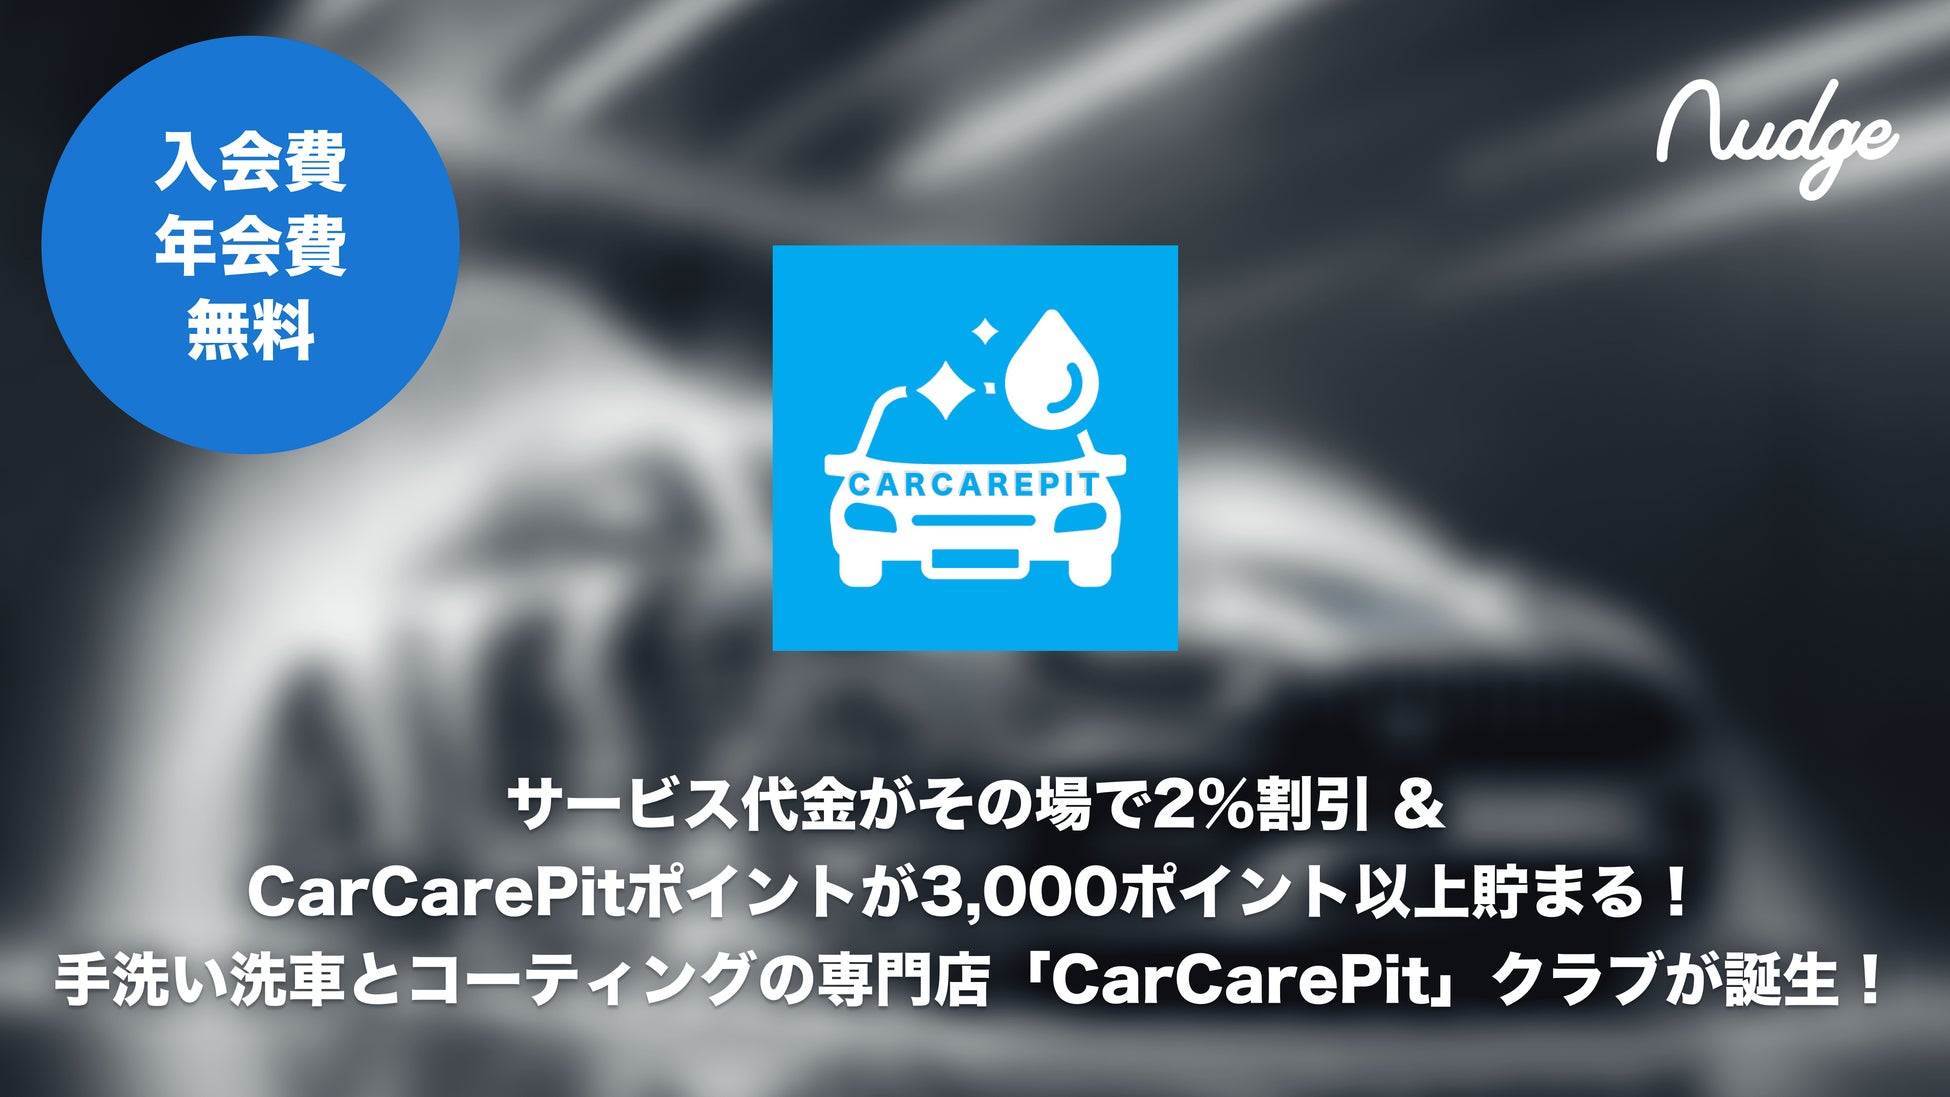 18歳から申し込める、日常使いでCarCarePitポイントが貯まる特典付きCarCarePit公式クレジットカードが誕生しました